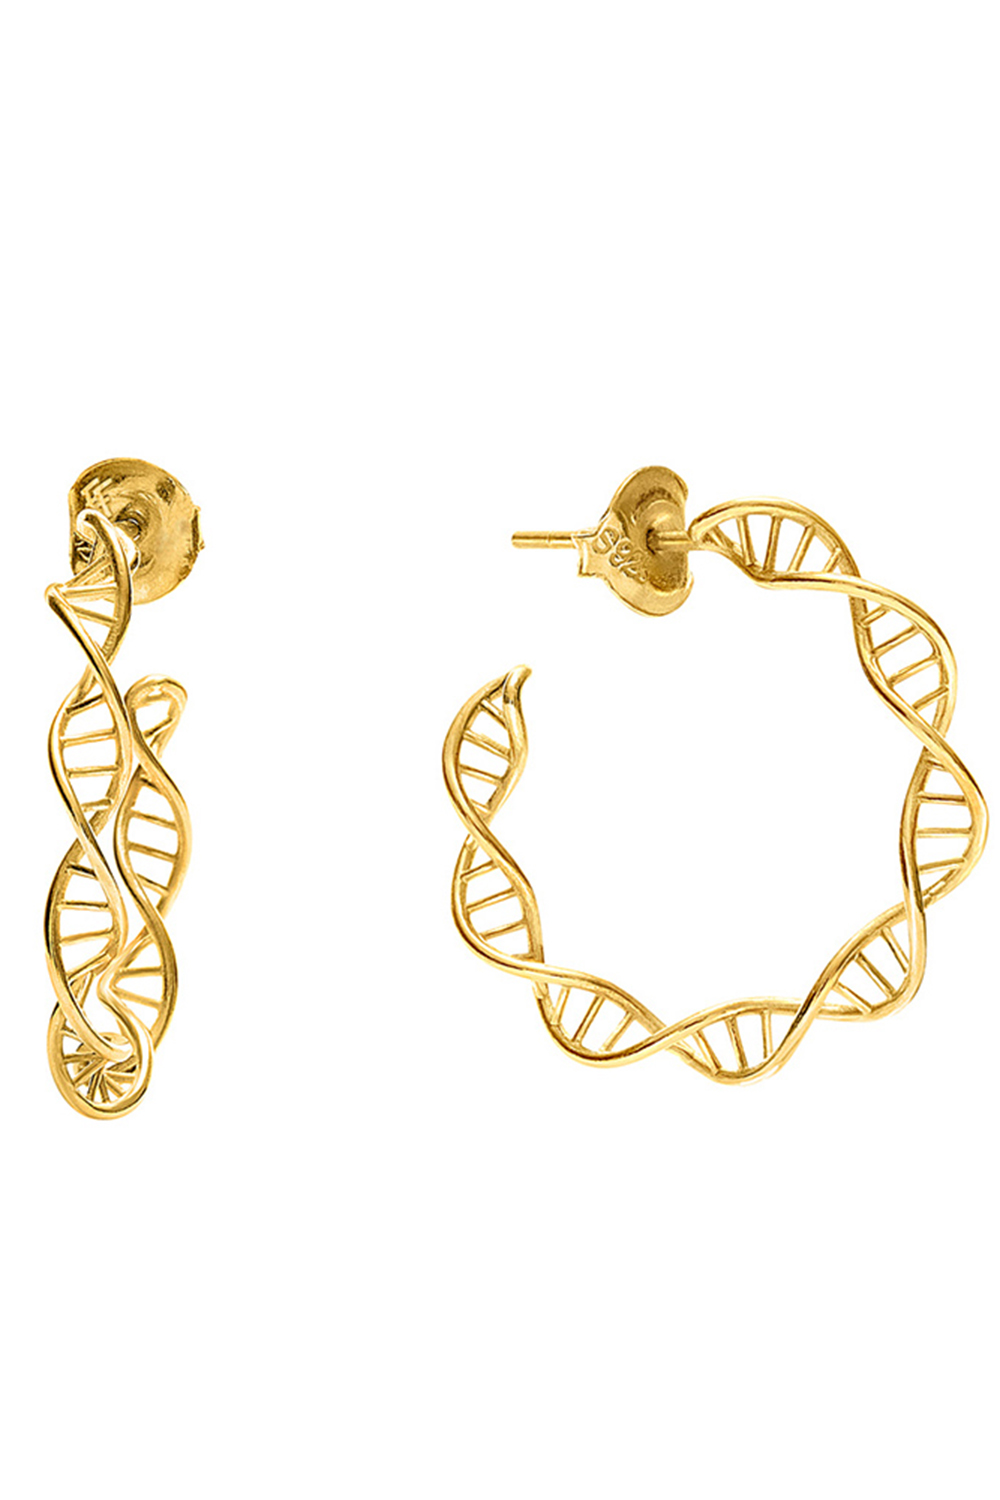 Γυναικεία/Αξεσουάρ/Κοσμήματα/Σκουλαρίκια FOLLI FOLLIE - Γυναικεία ασημένια σκουλαρίκια FOLLI FOLLIE STYLE DNA χρυσά